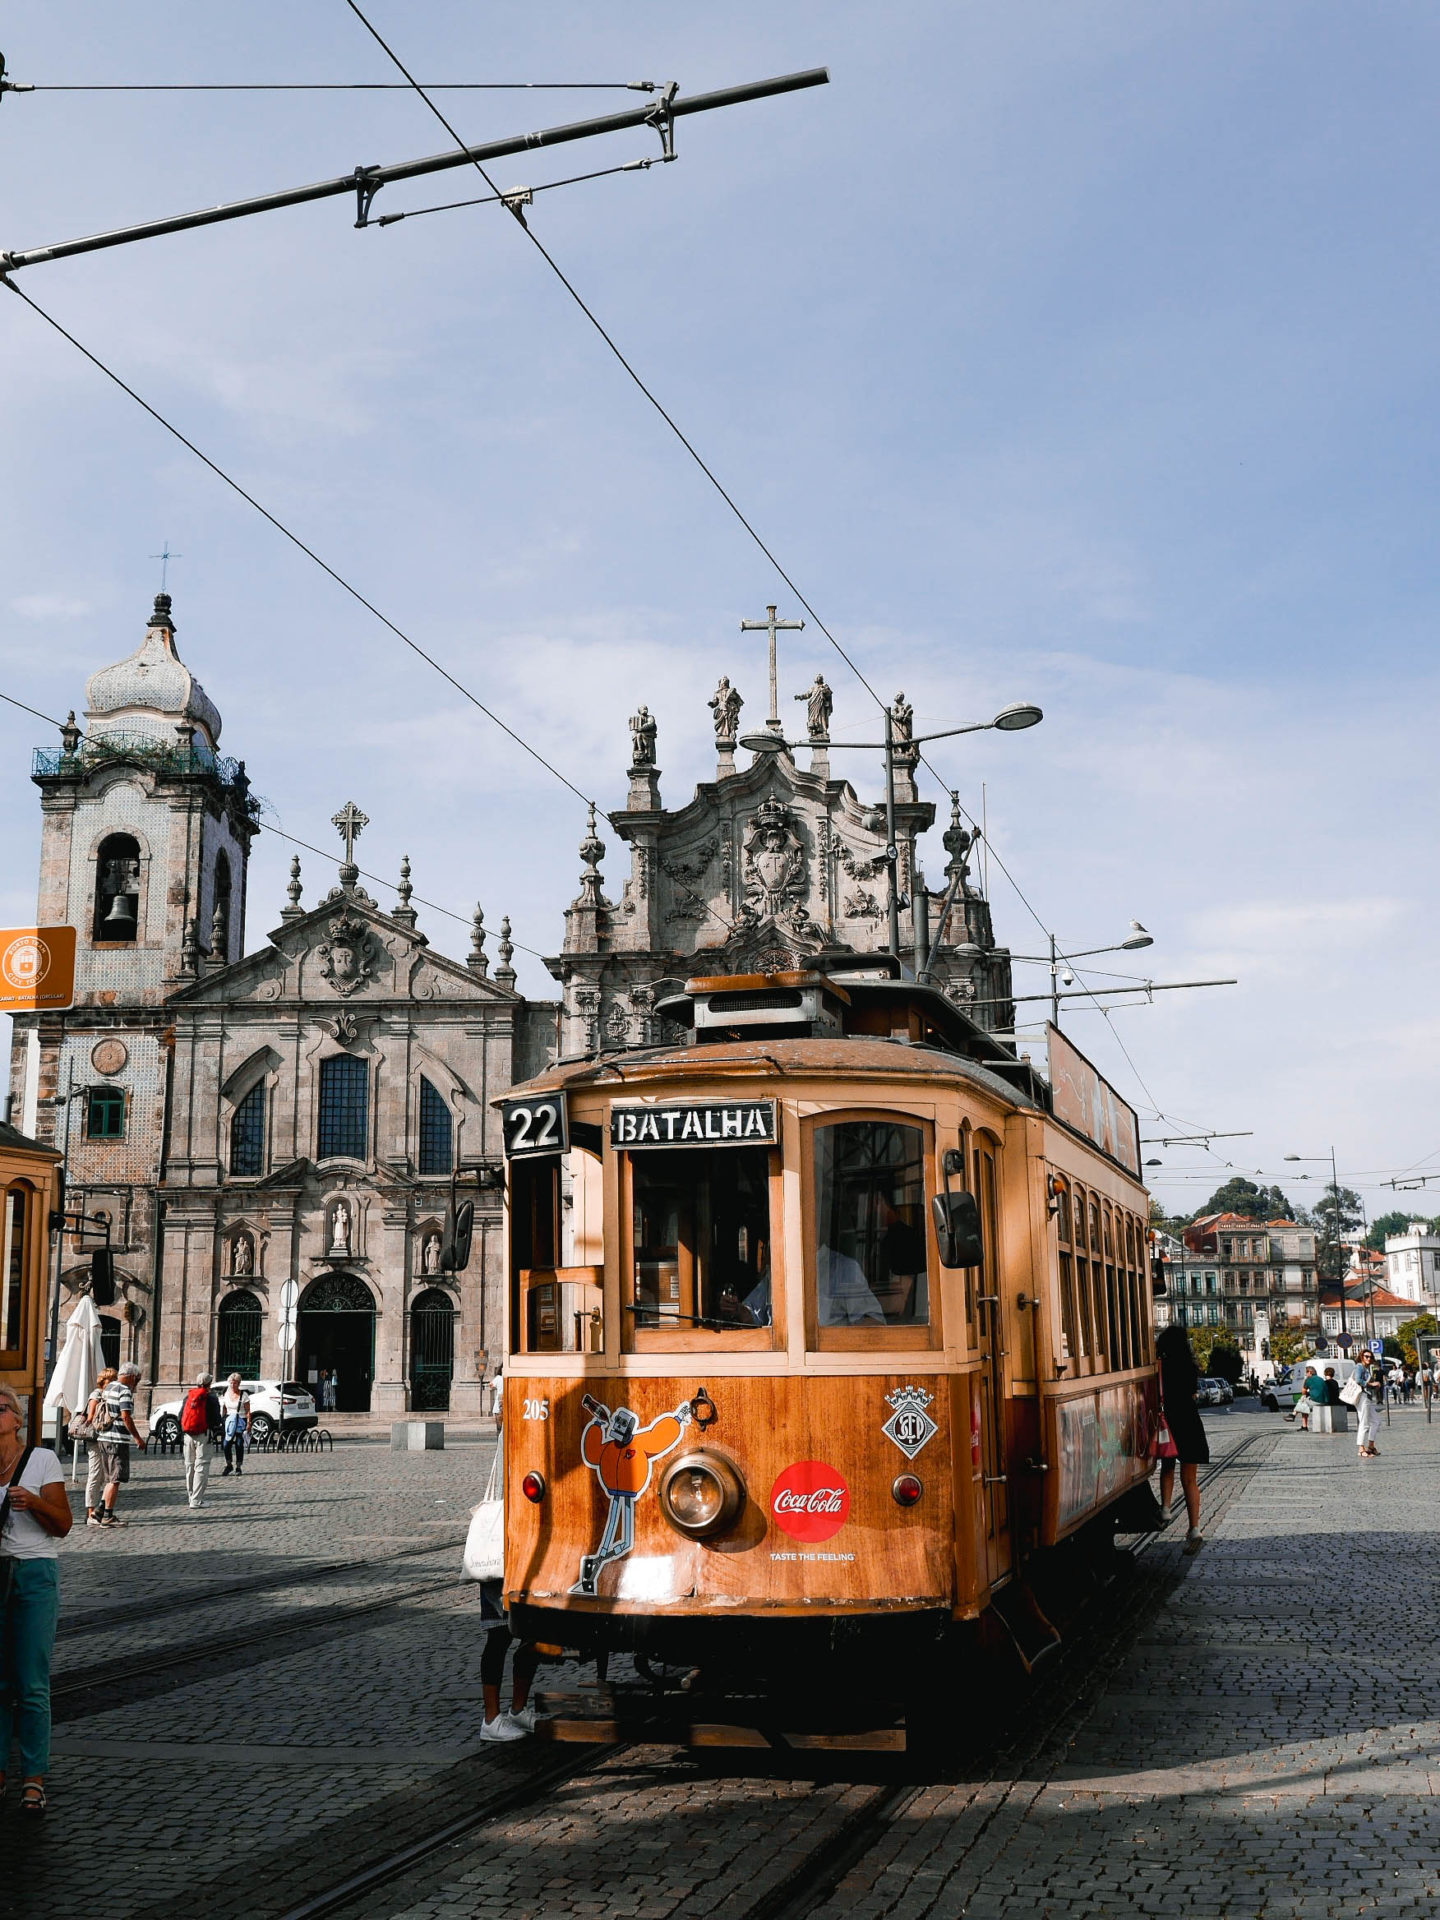 The Ultimate Guide to Porto, Portugal